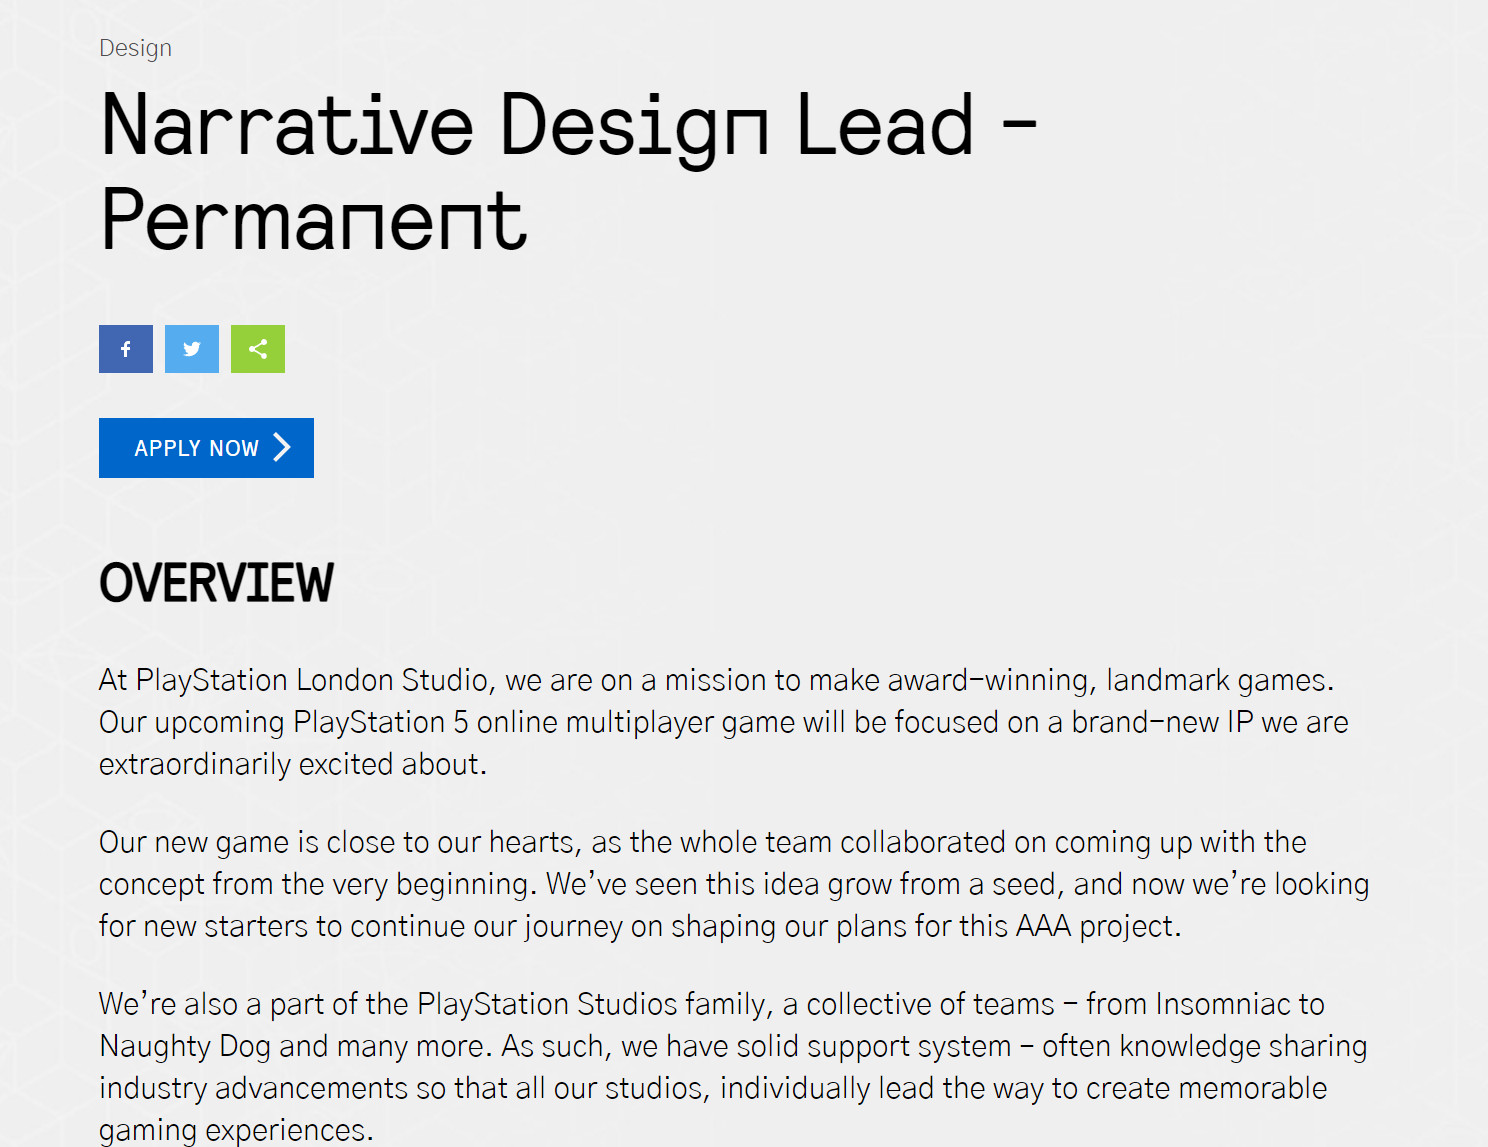 索尼倫敦工作室正為PS5打造 幻想題材即時服務遊戲